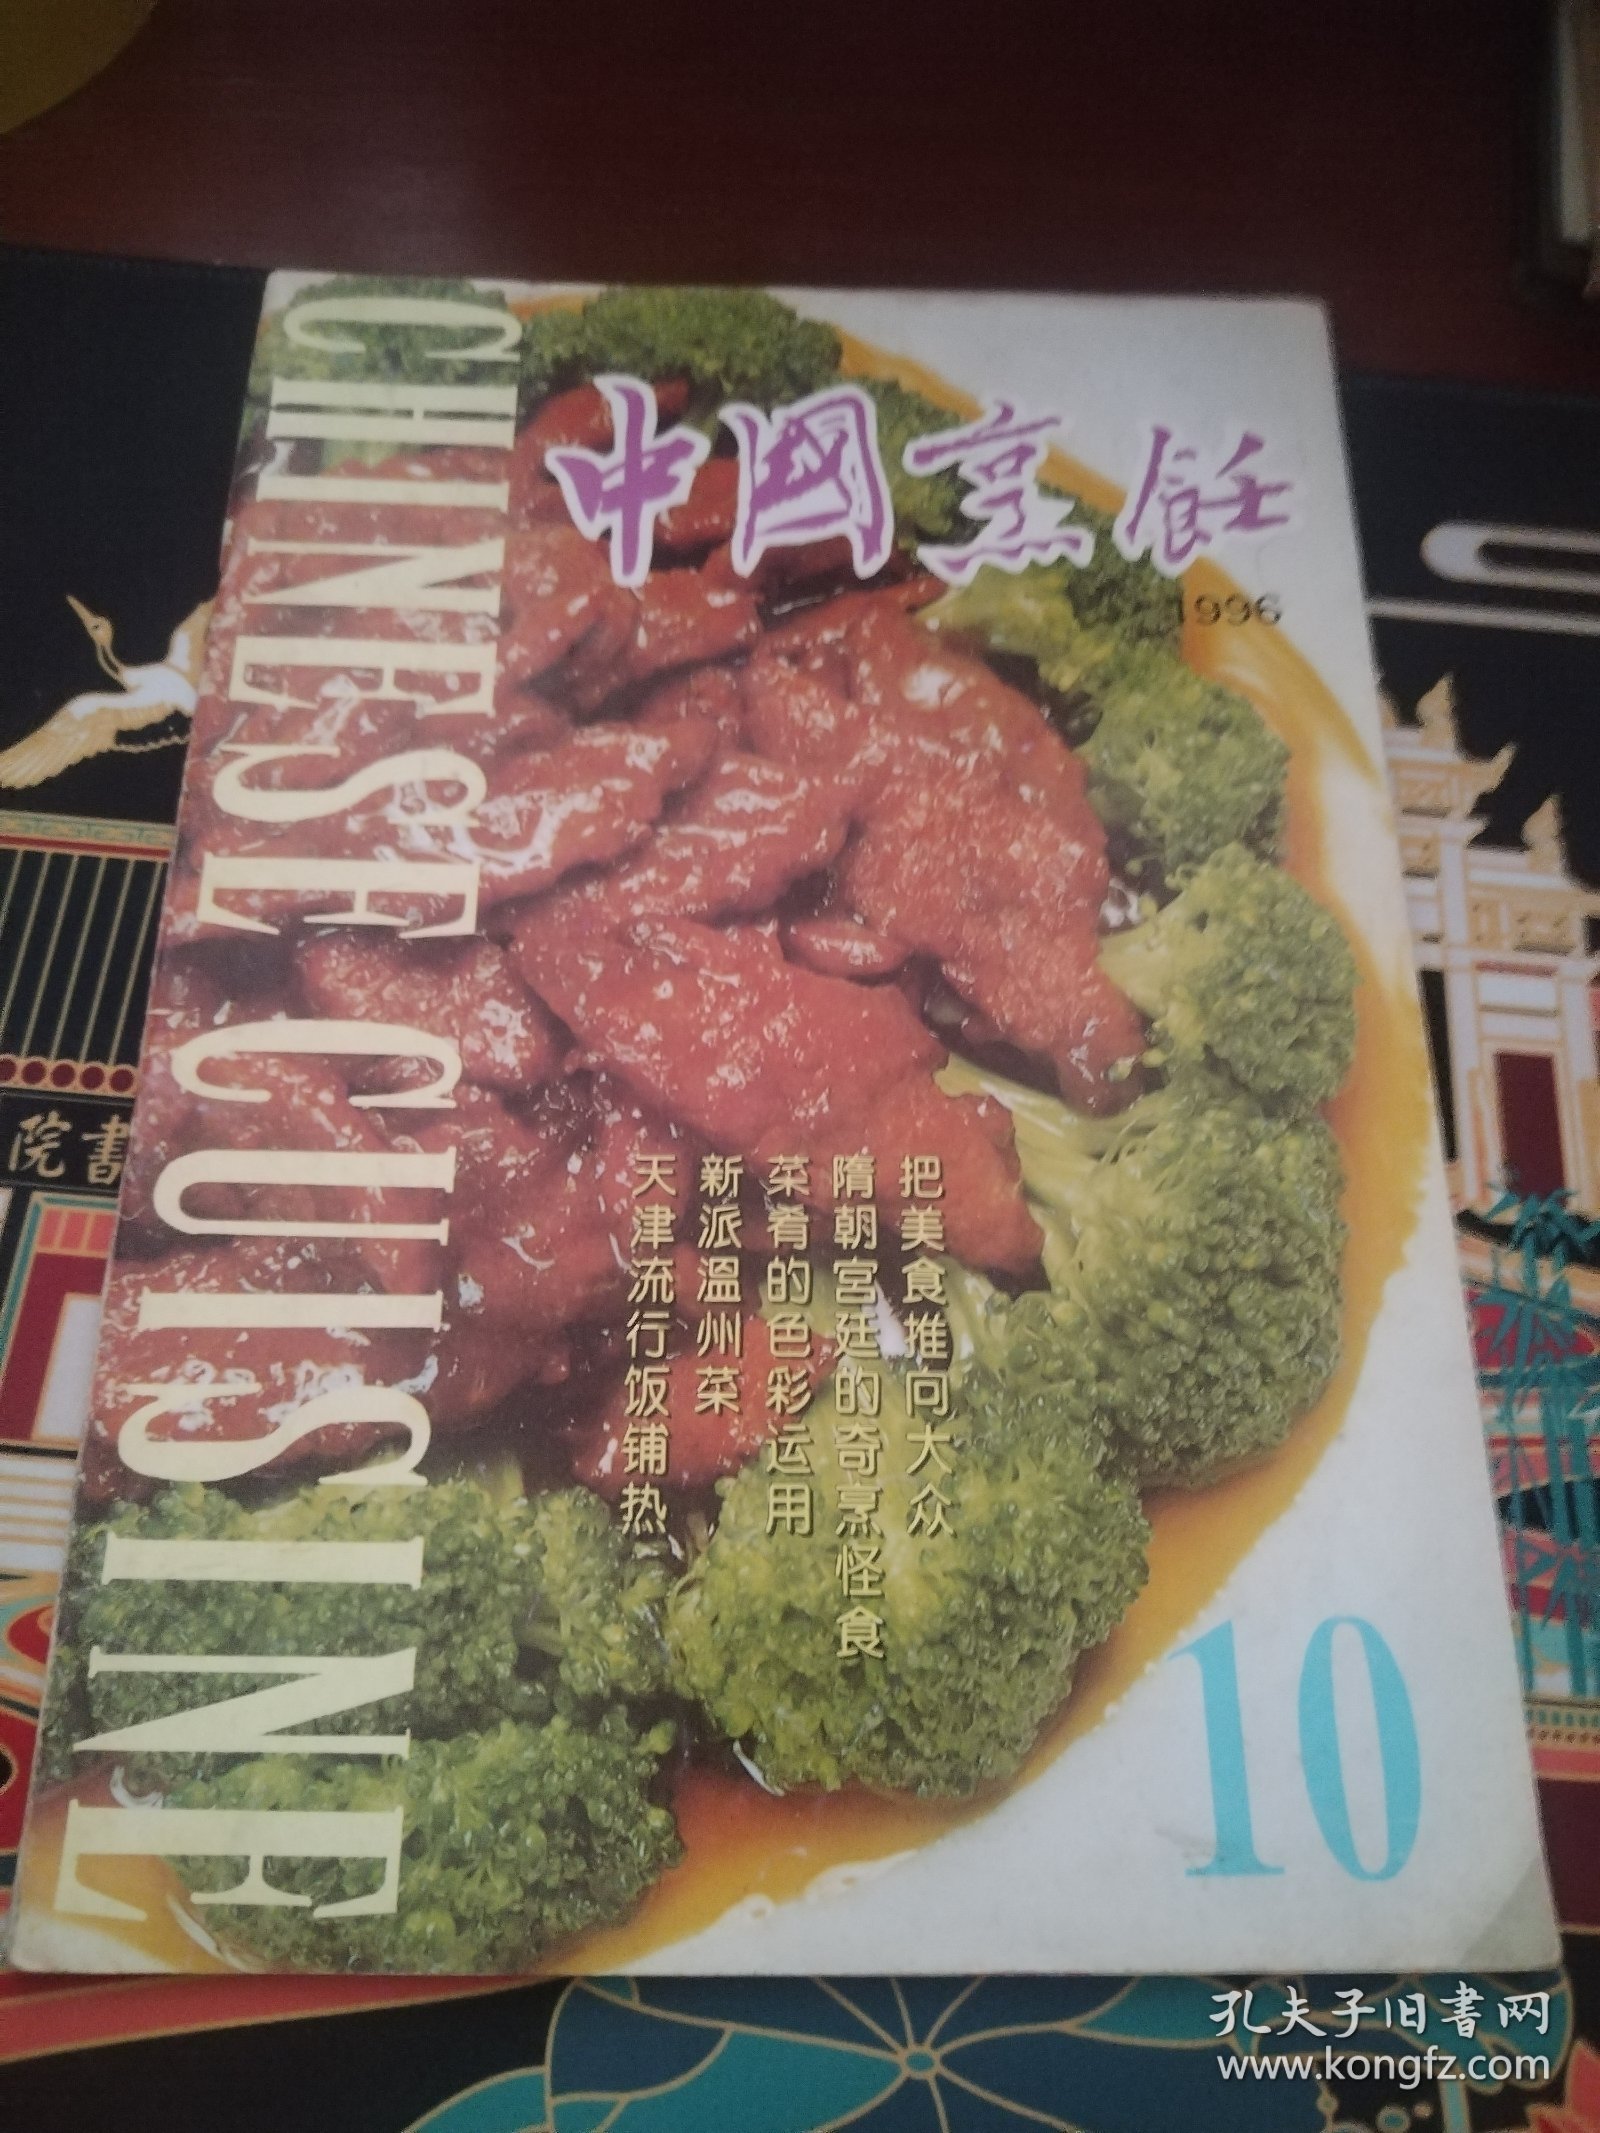 中国烹饪1996年第10期